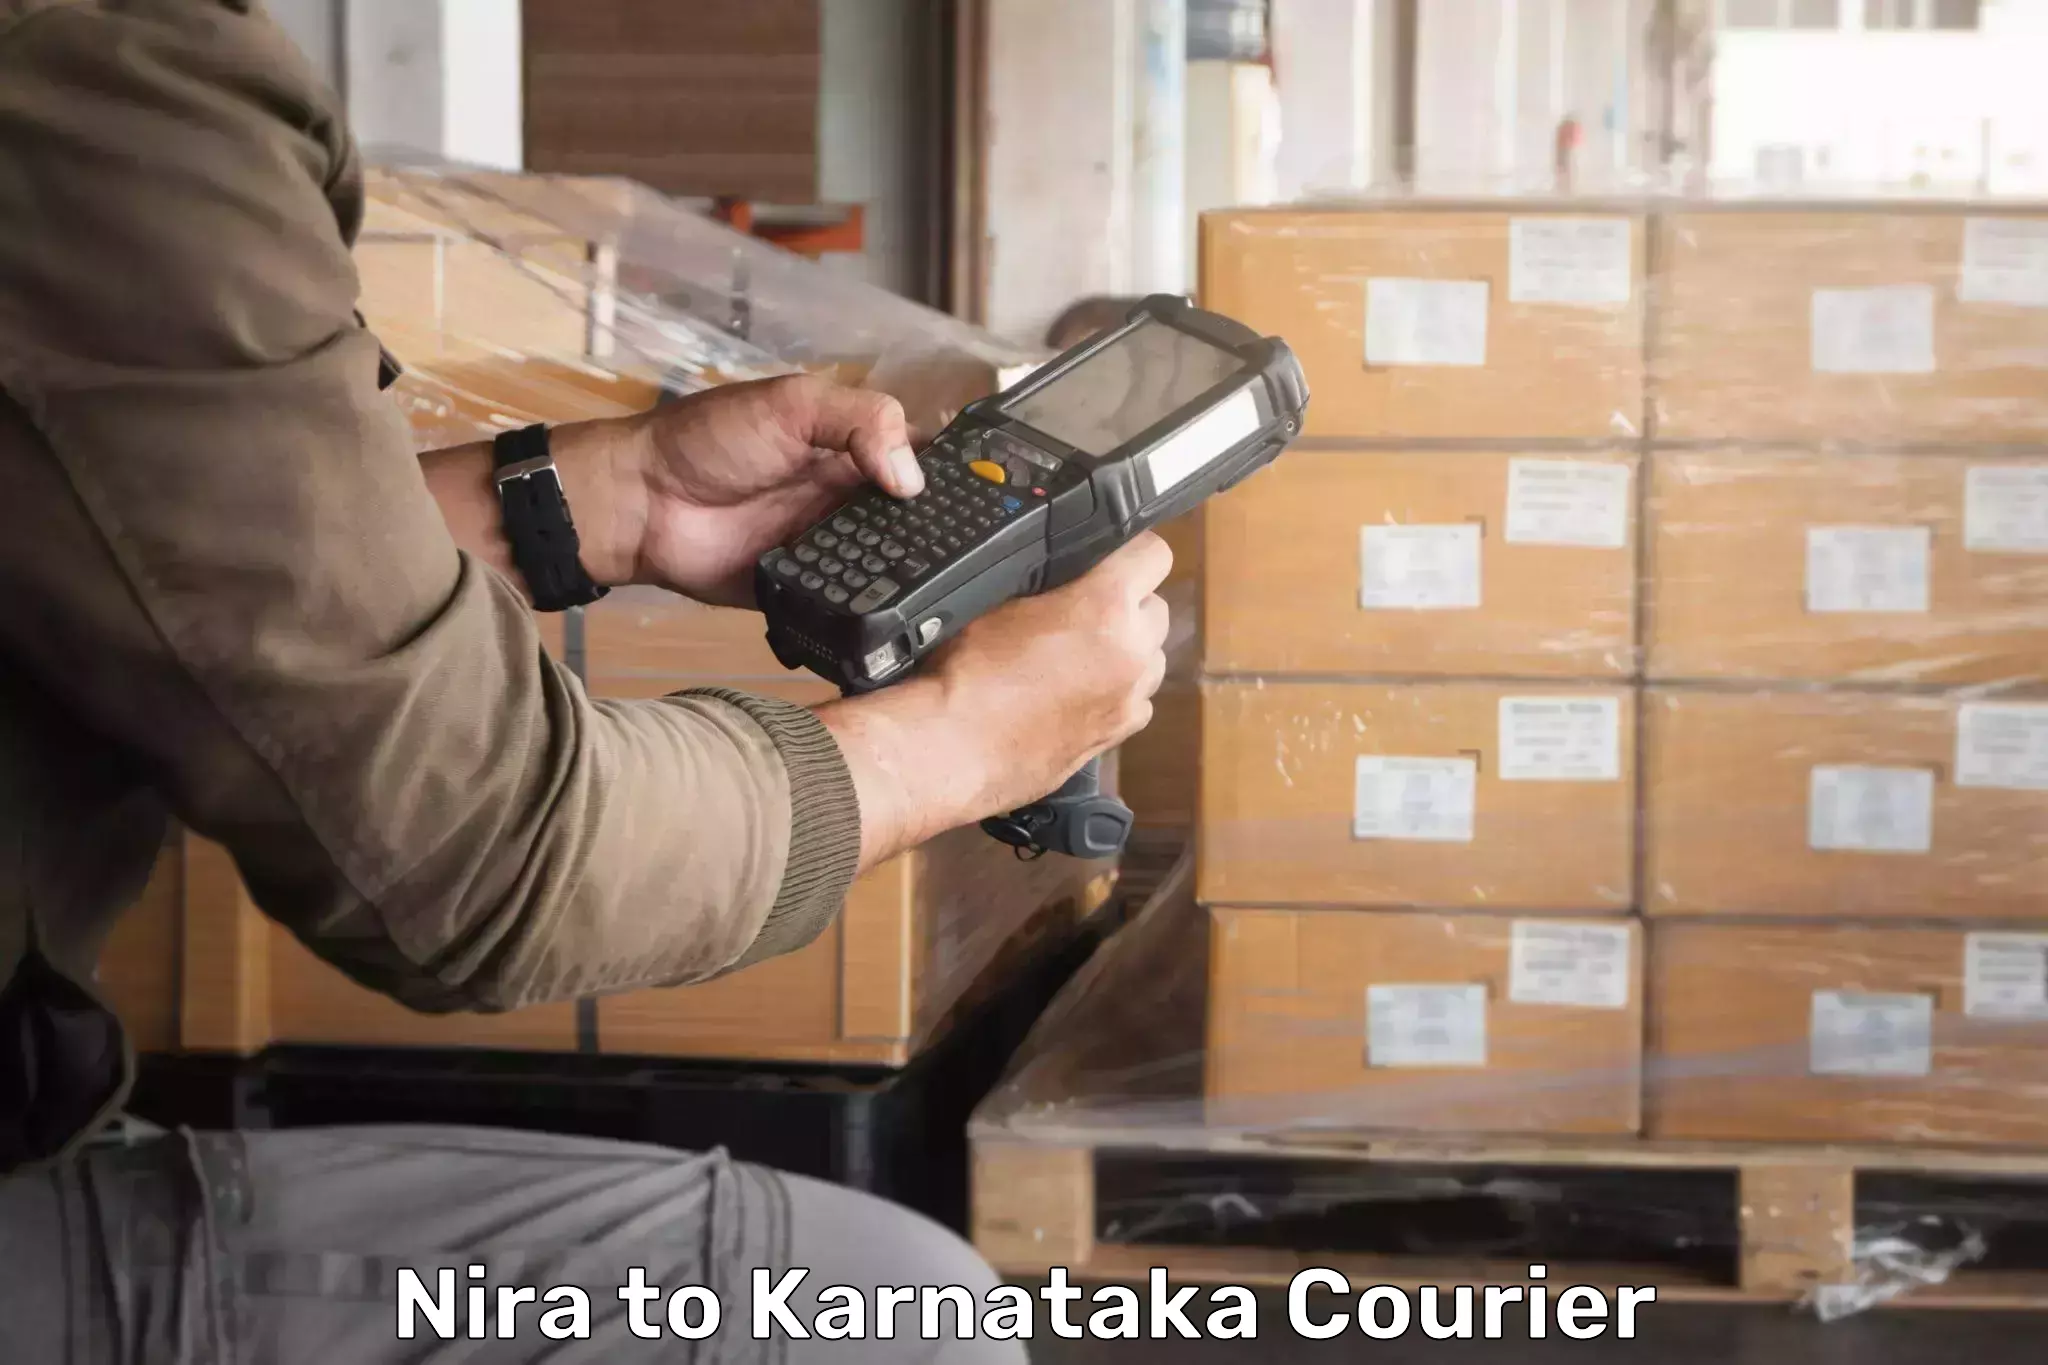 Special handling courier Nira to Mysore